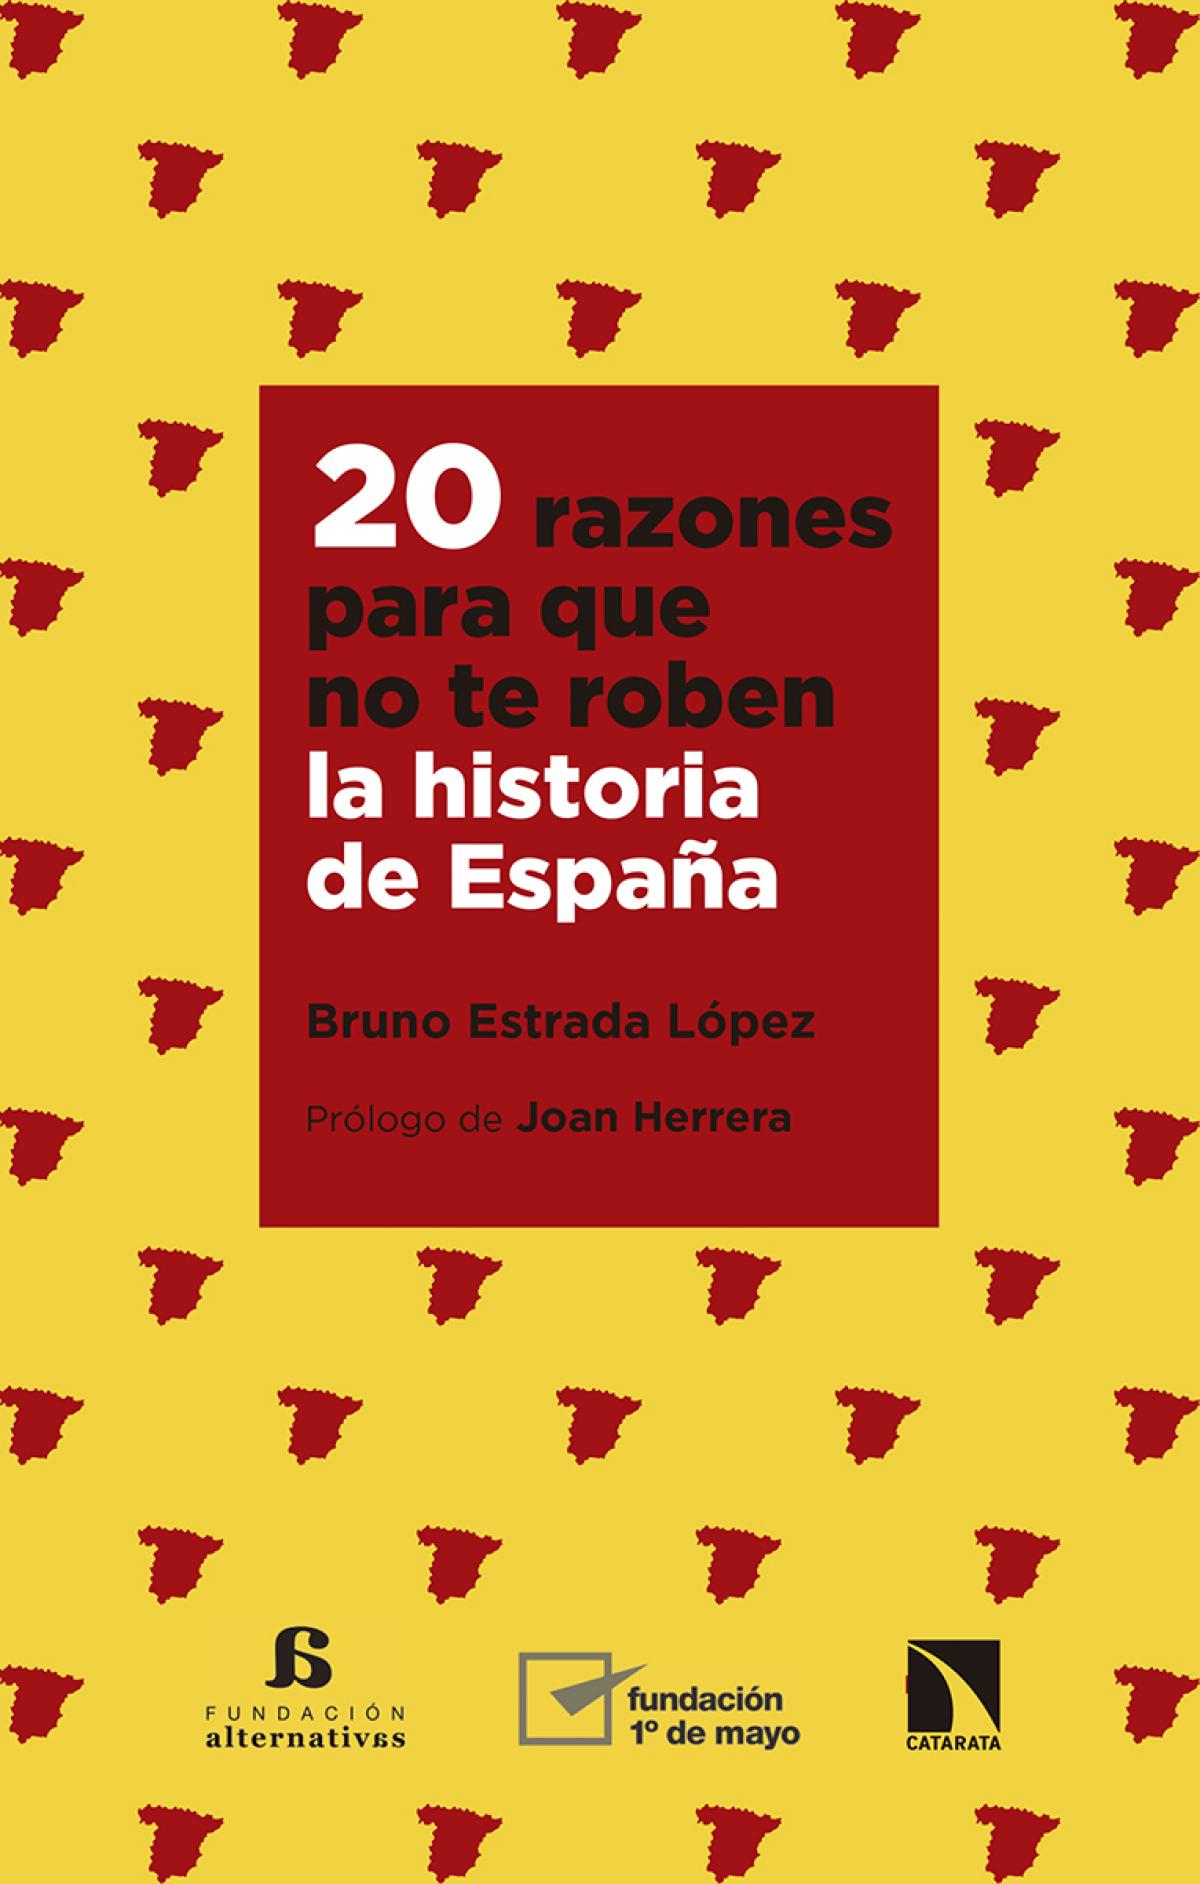 Portada del libro "20 razones para que no te roben la historia de Espaa"